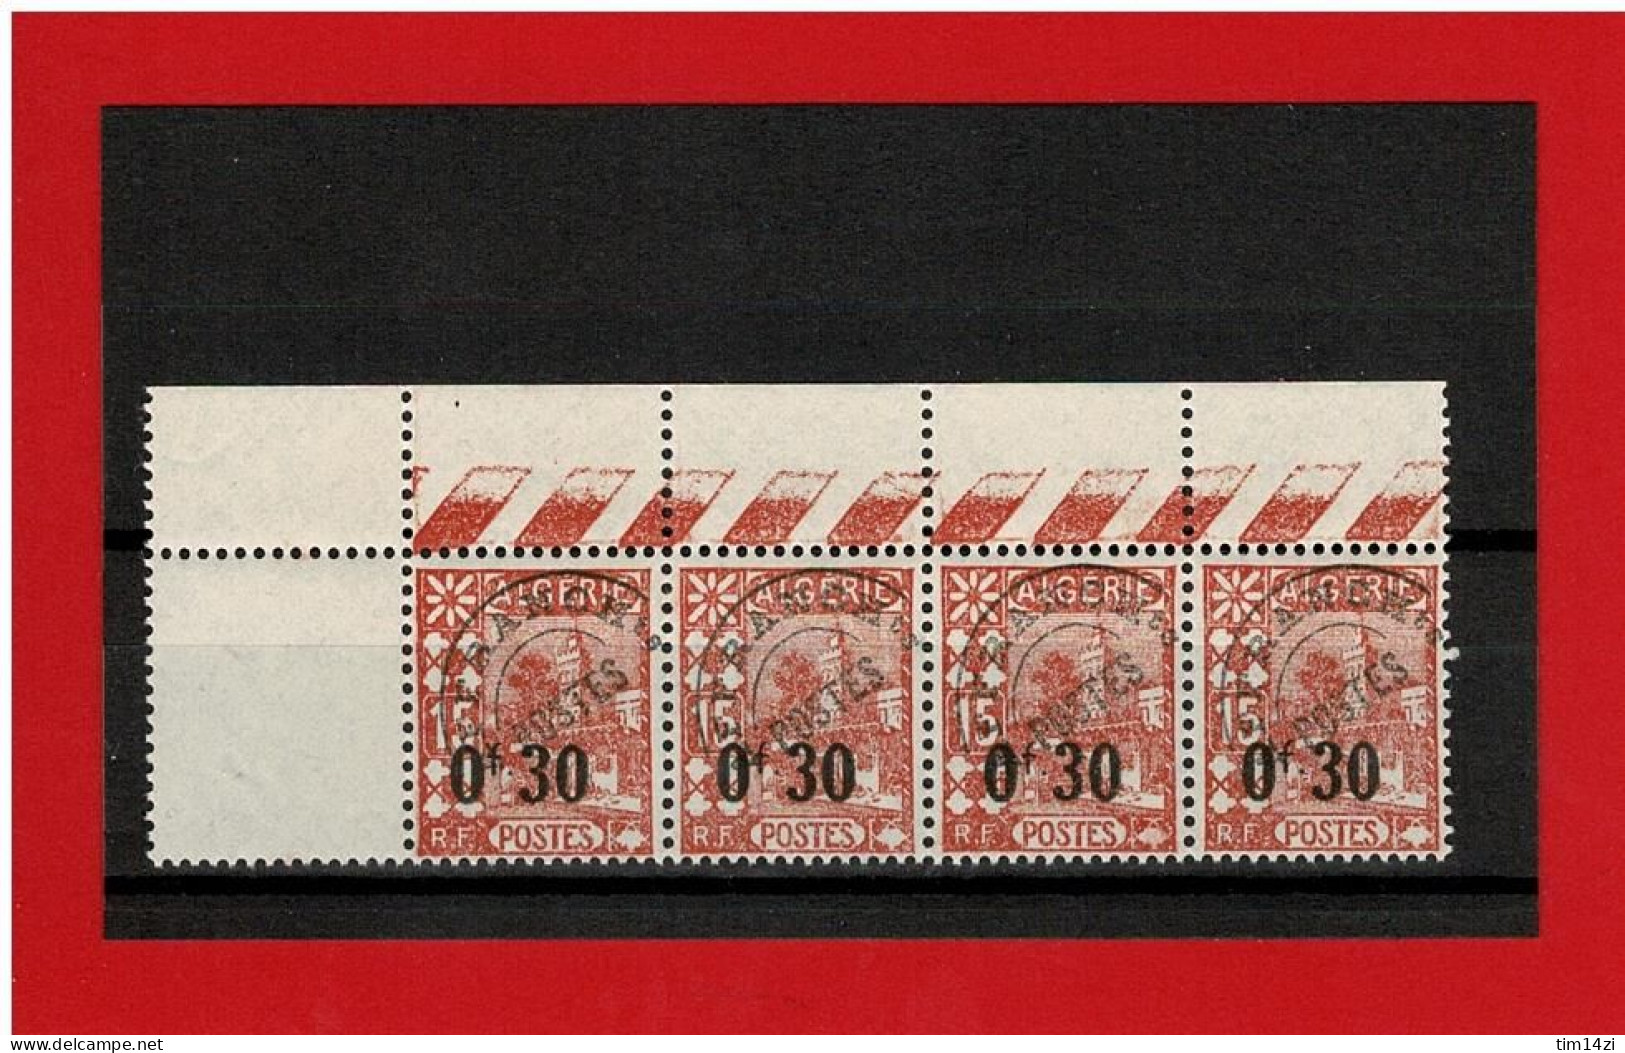 ALGERIE - 1938 - N°14** PREOBLITERES - SUPERBE - MOSQUEE - BLOC De 4 TIMBRES  SANS CHARNIERE - BORD DE FEUILLE - Postage Due